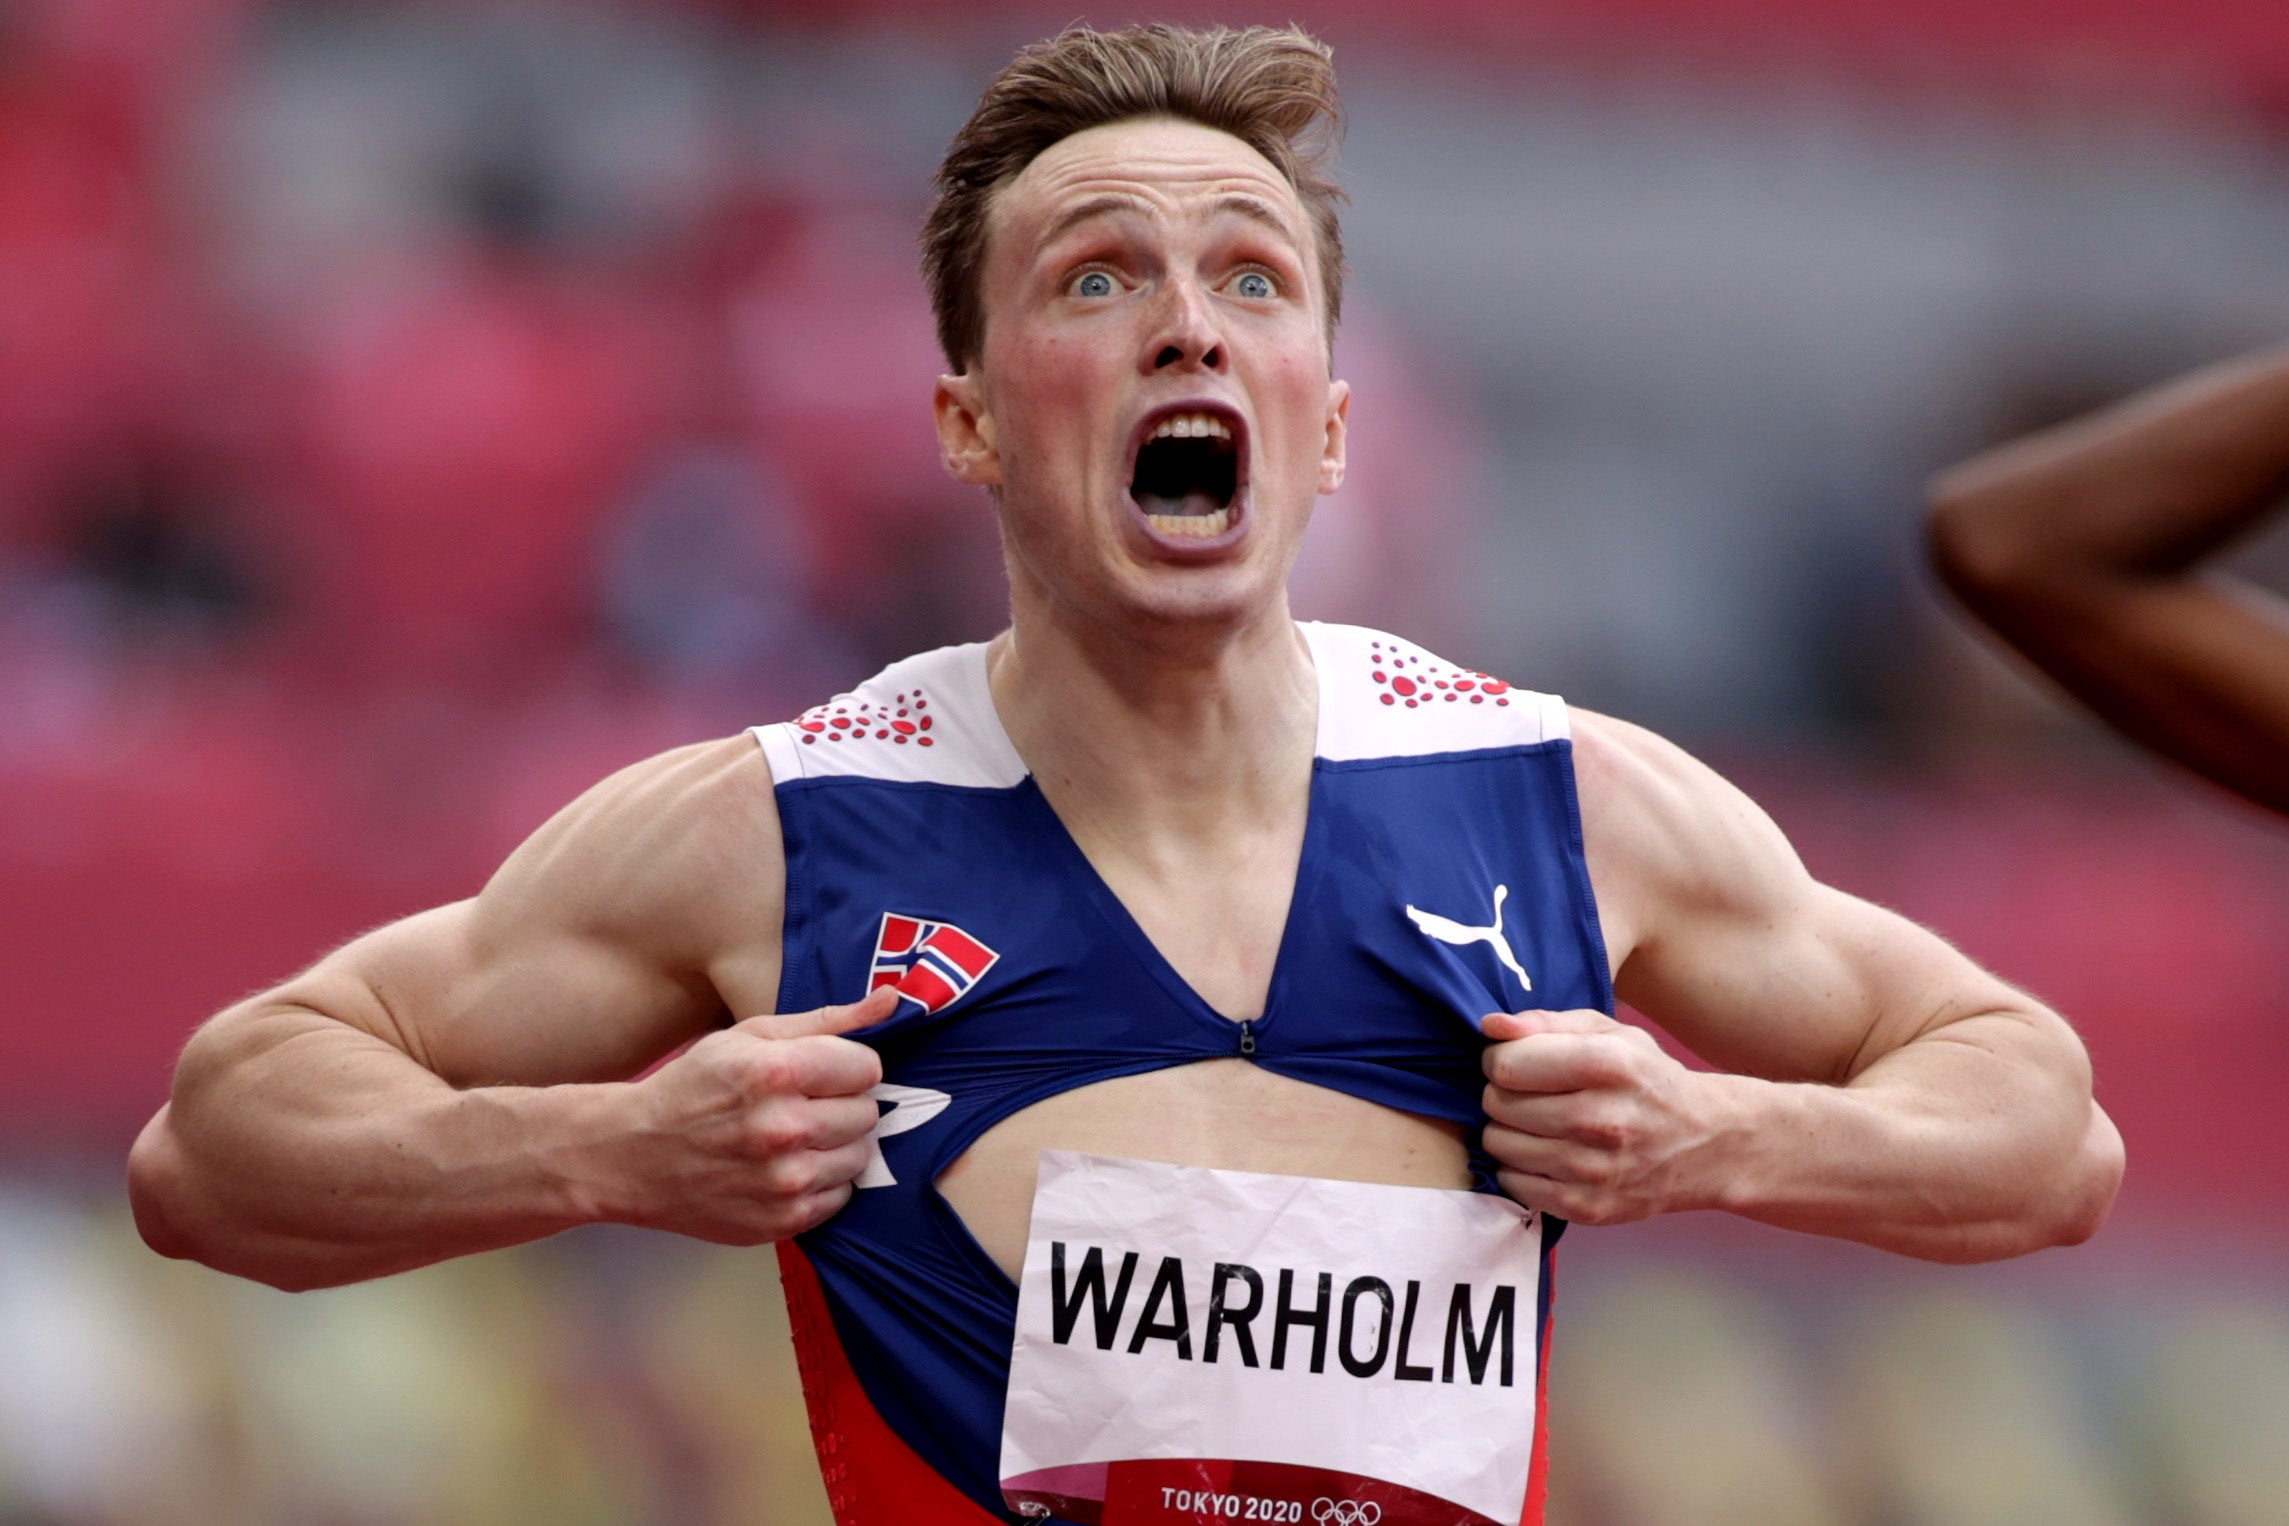 Karsten Warholm celebrates incredible run